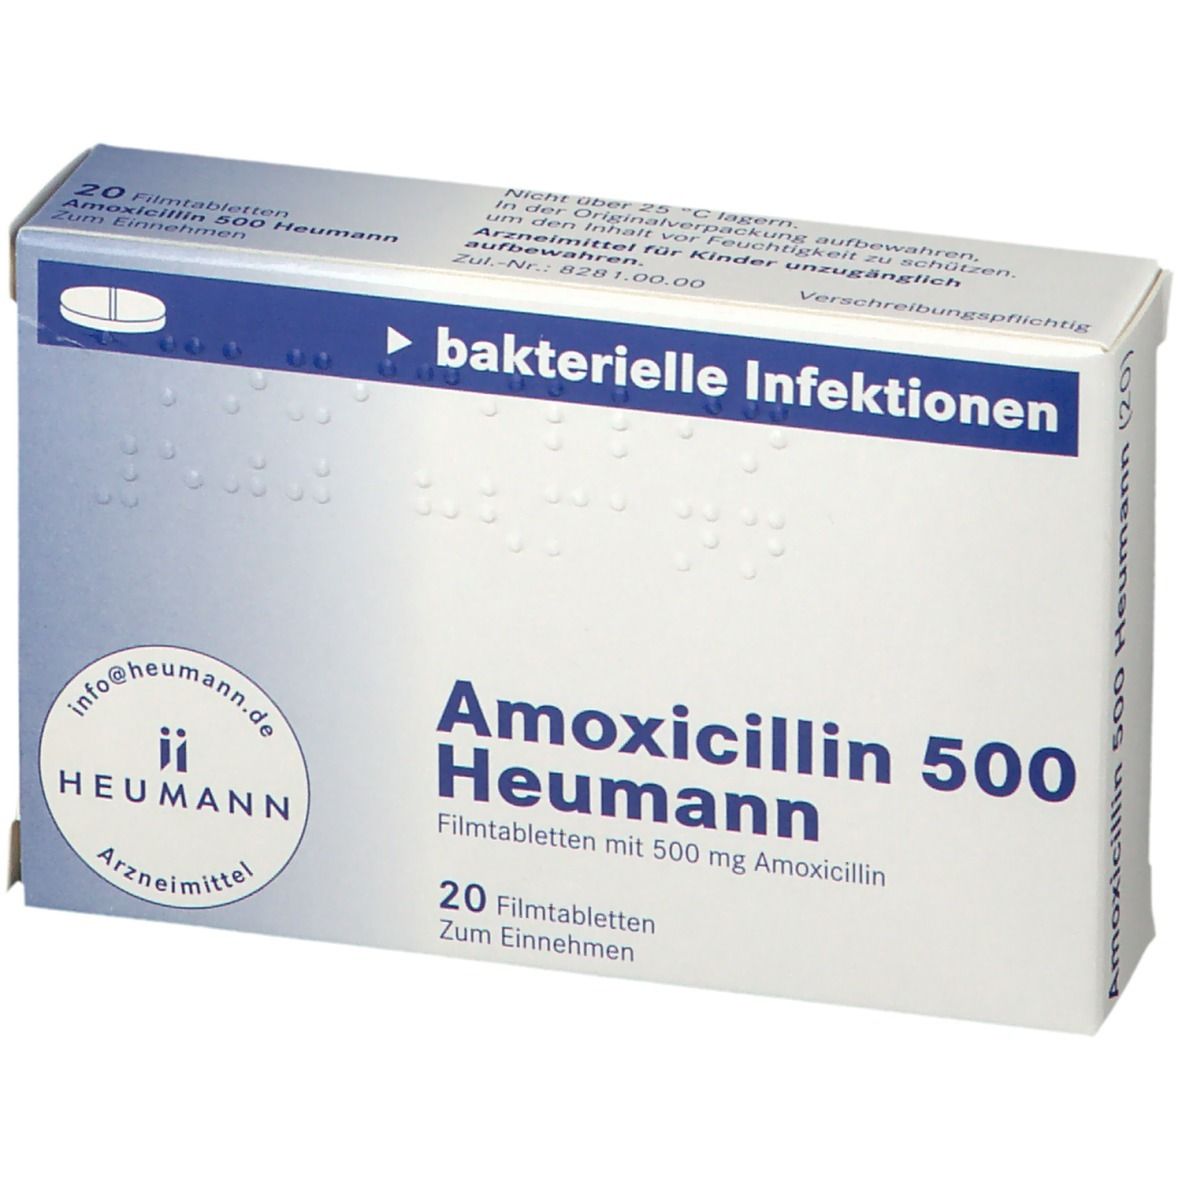 Amoxicillin 500 Heumann